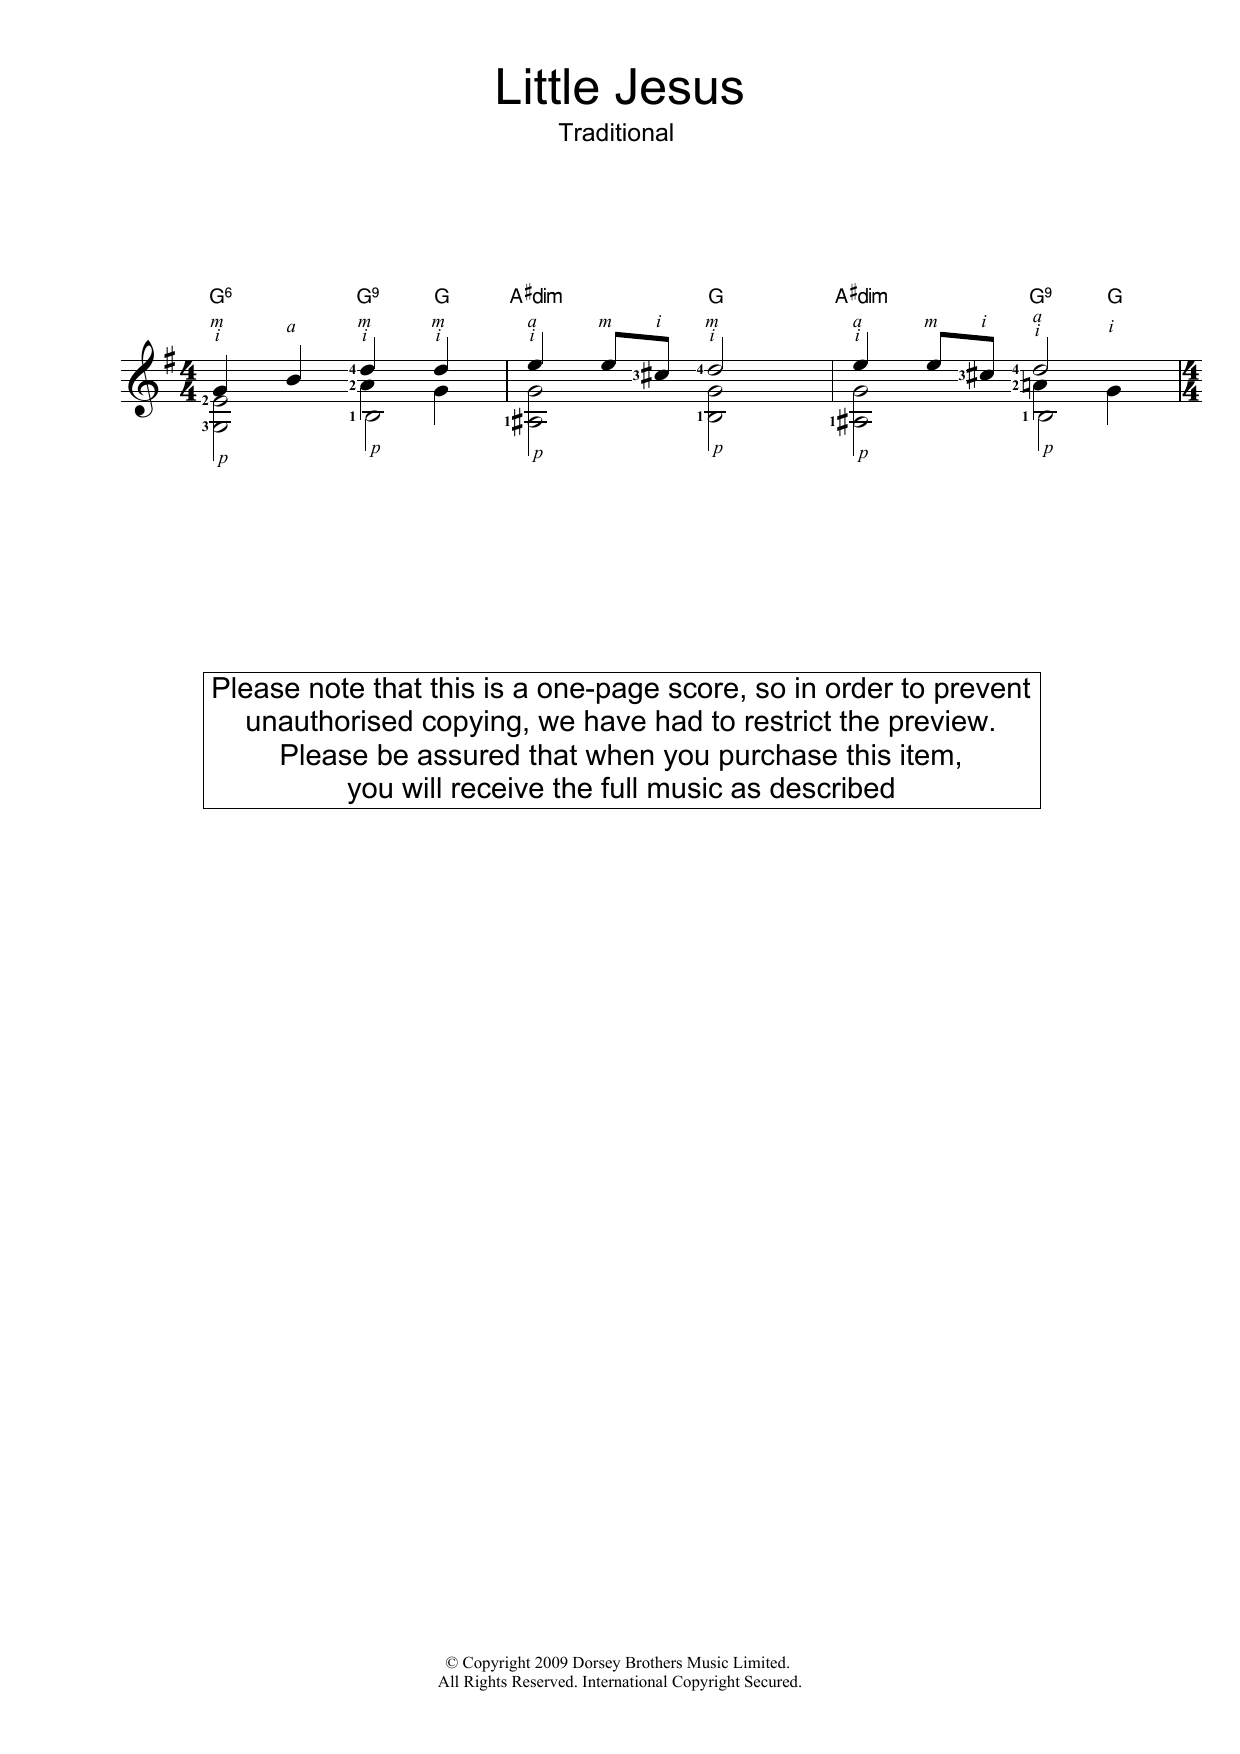 Christmas Carol Little Jesus (Rocking Carol) sheet music notes printable PDF score